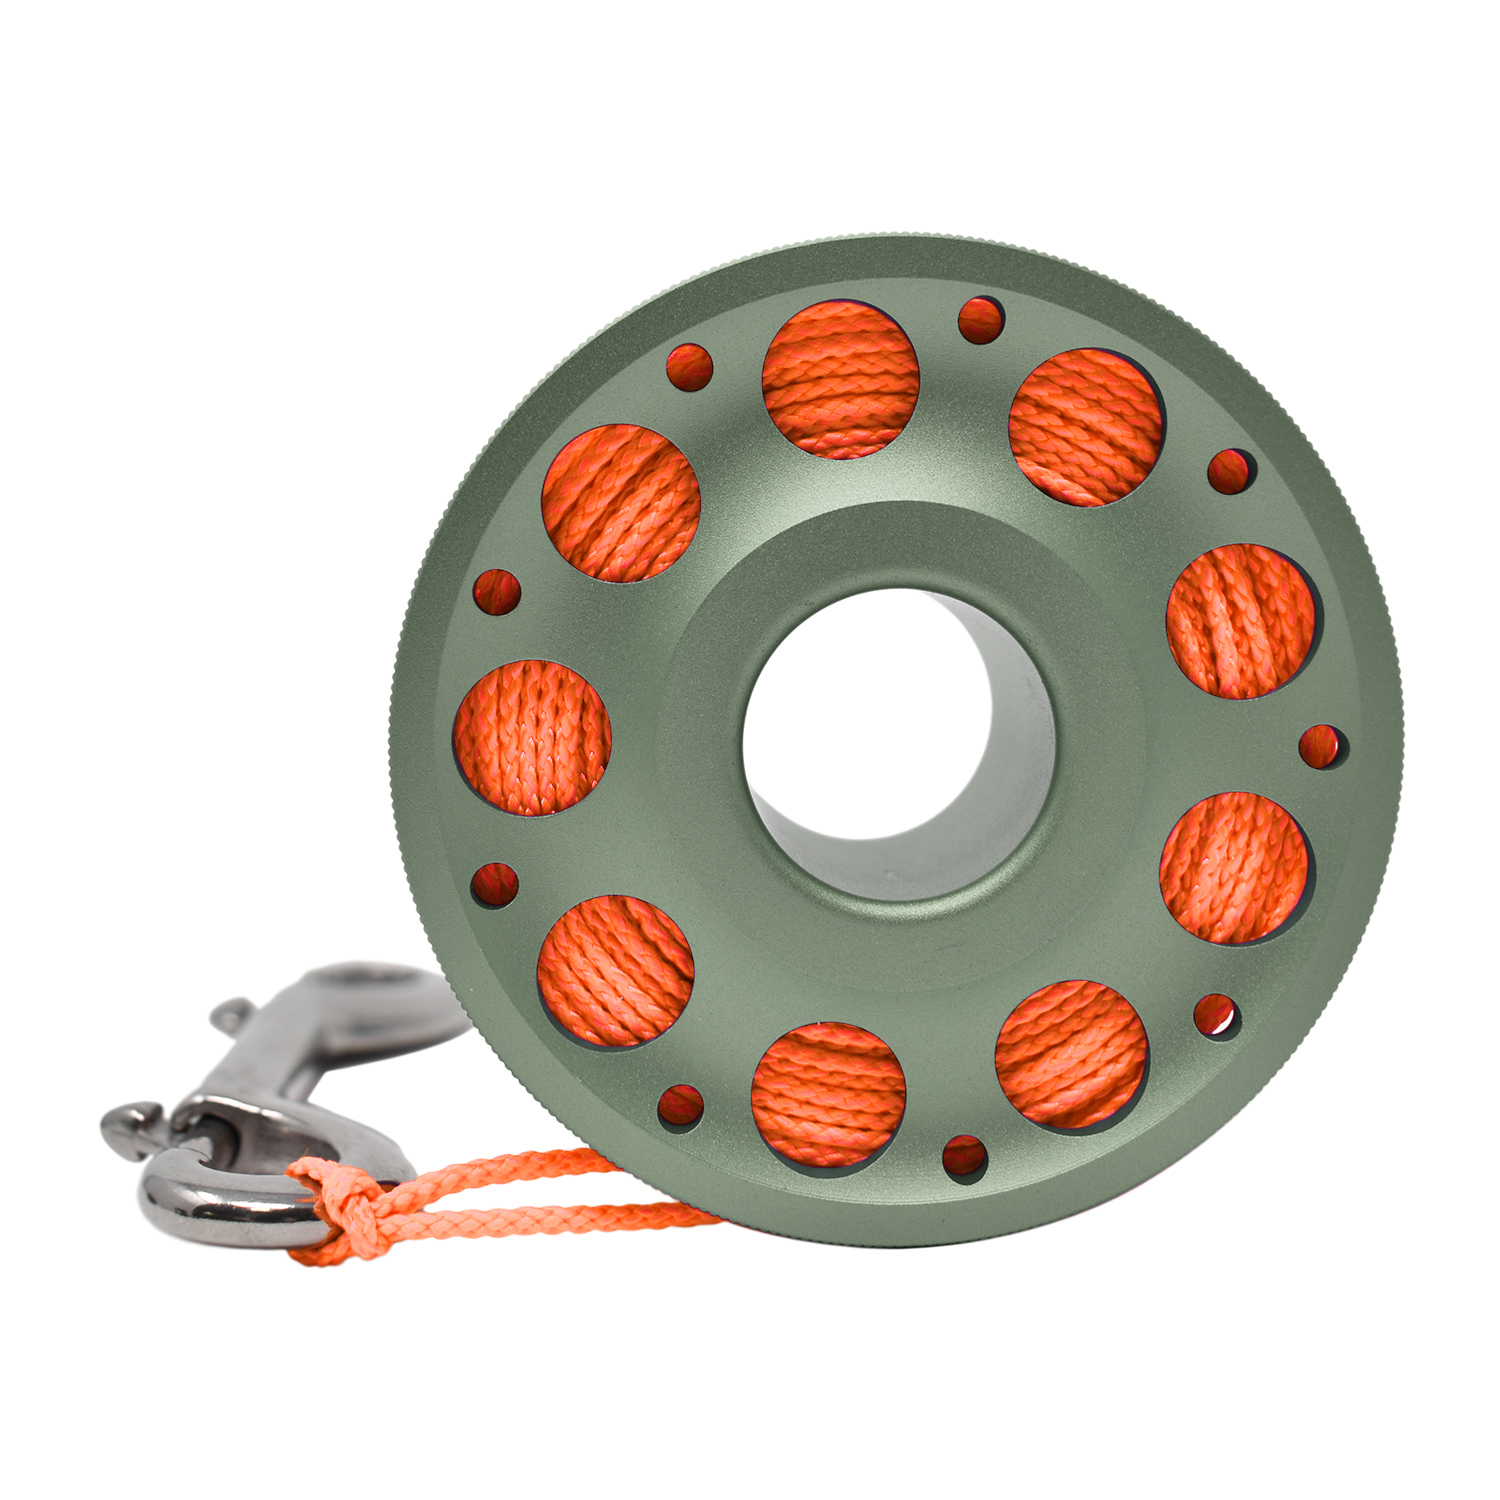 Aluminum Finger Spool 100ft Dive Reel w/ Spinning Holder, Green/Orange - image 4 of 4